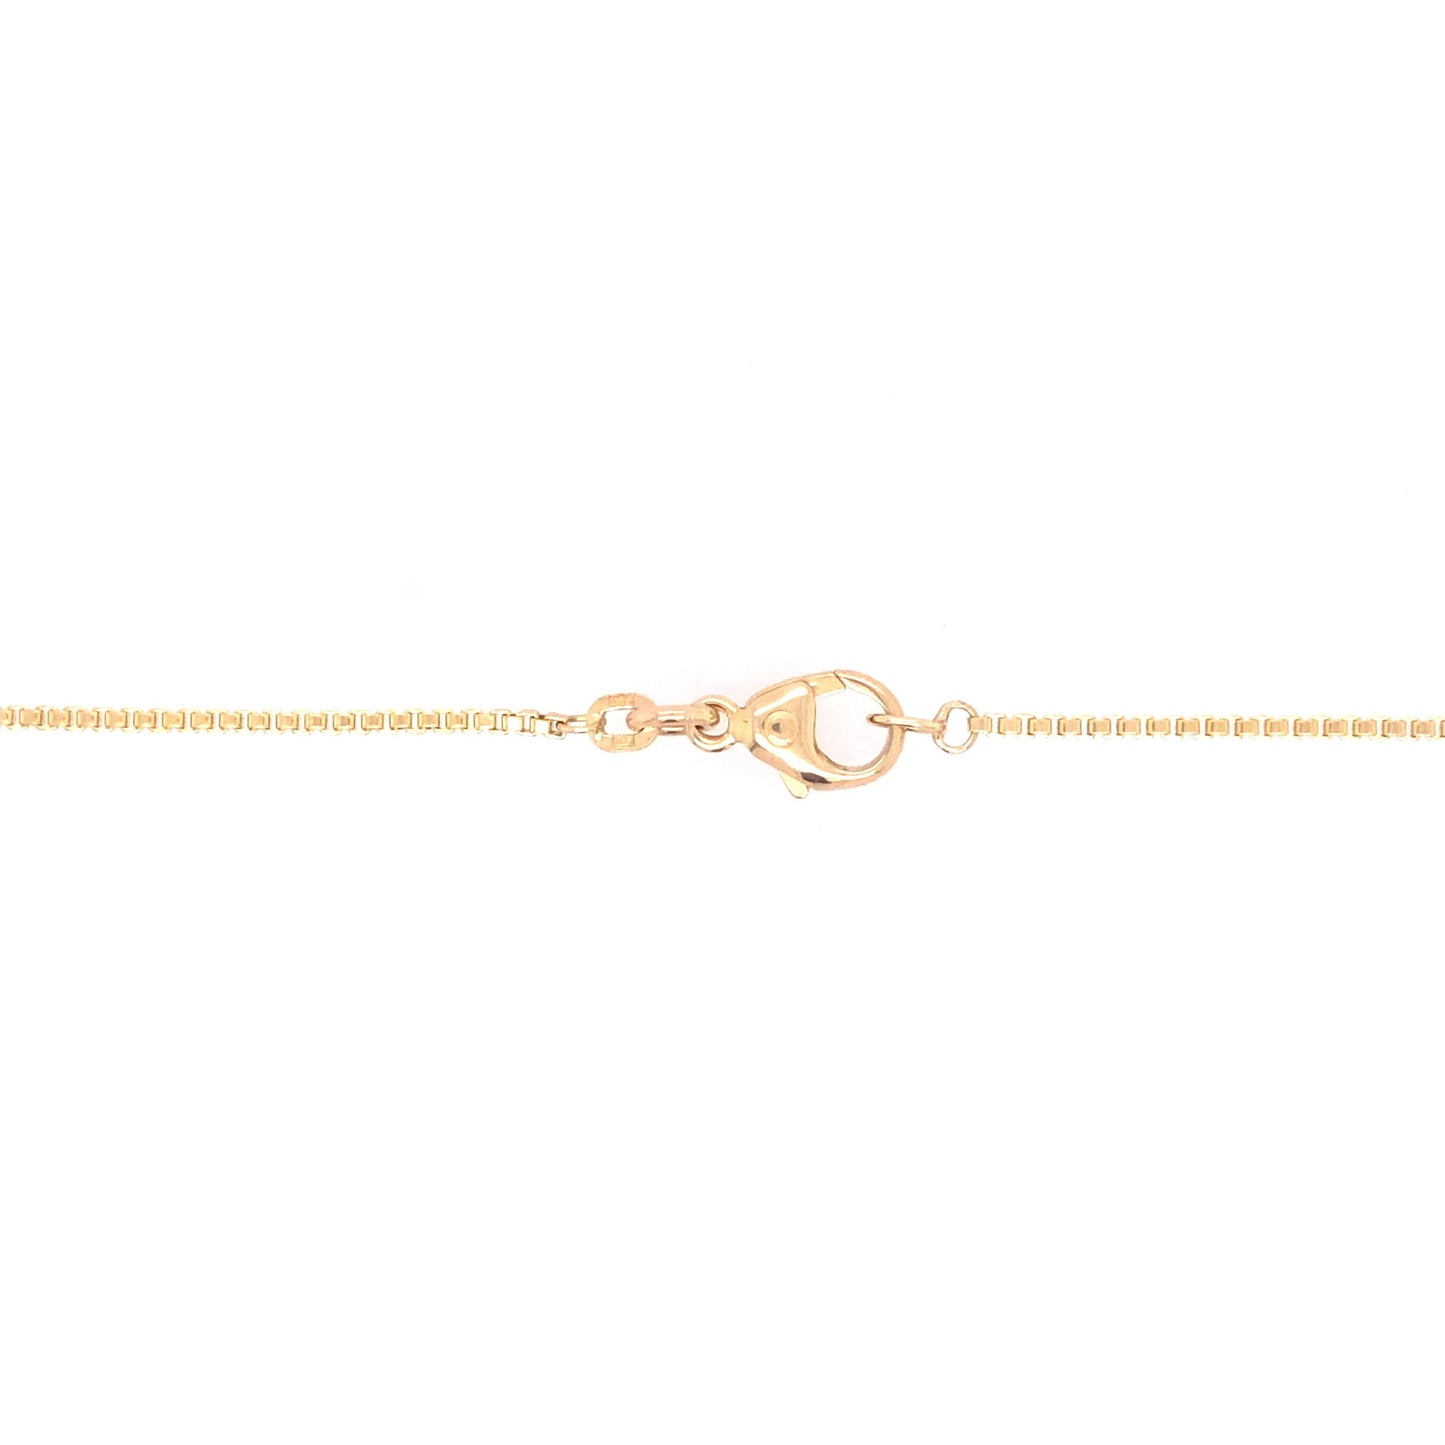 Halskette Venezianerkette Gold 585 / 14k mit Diamant